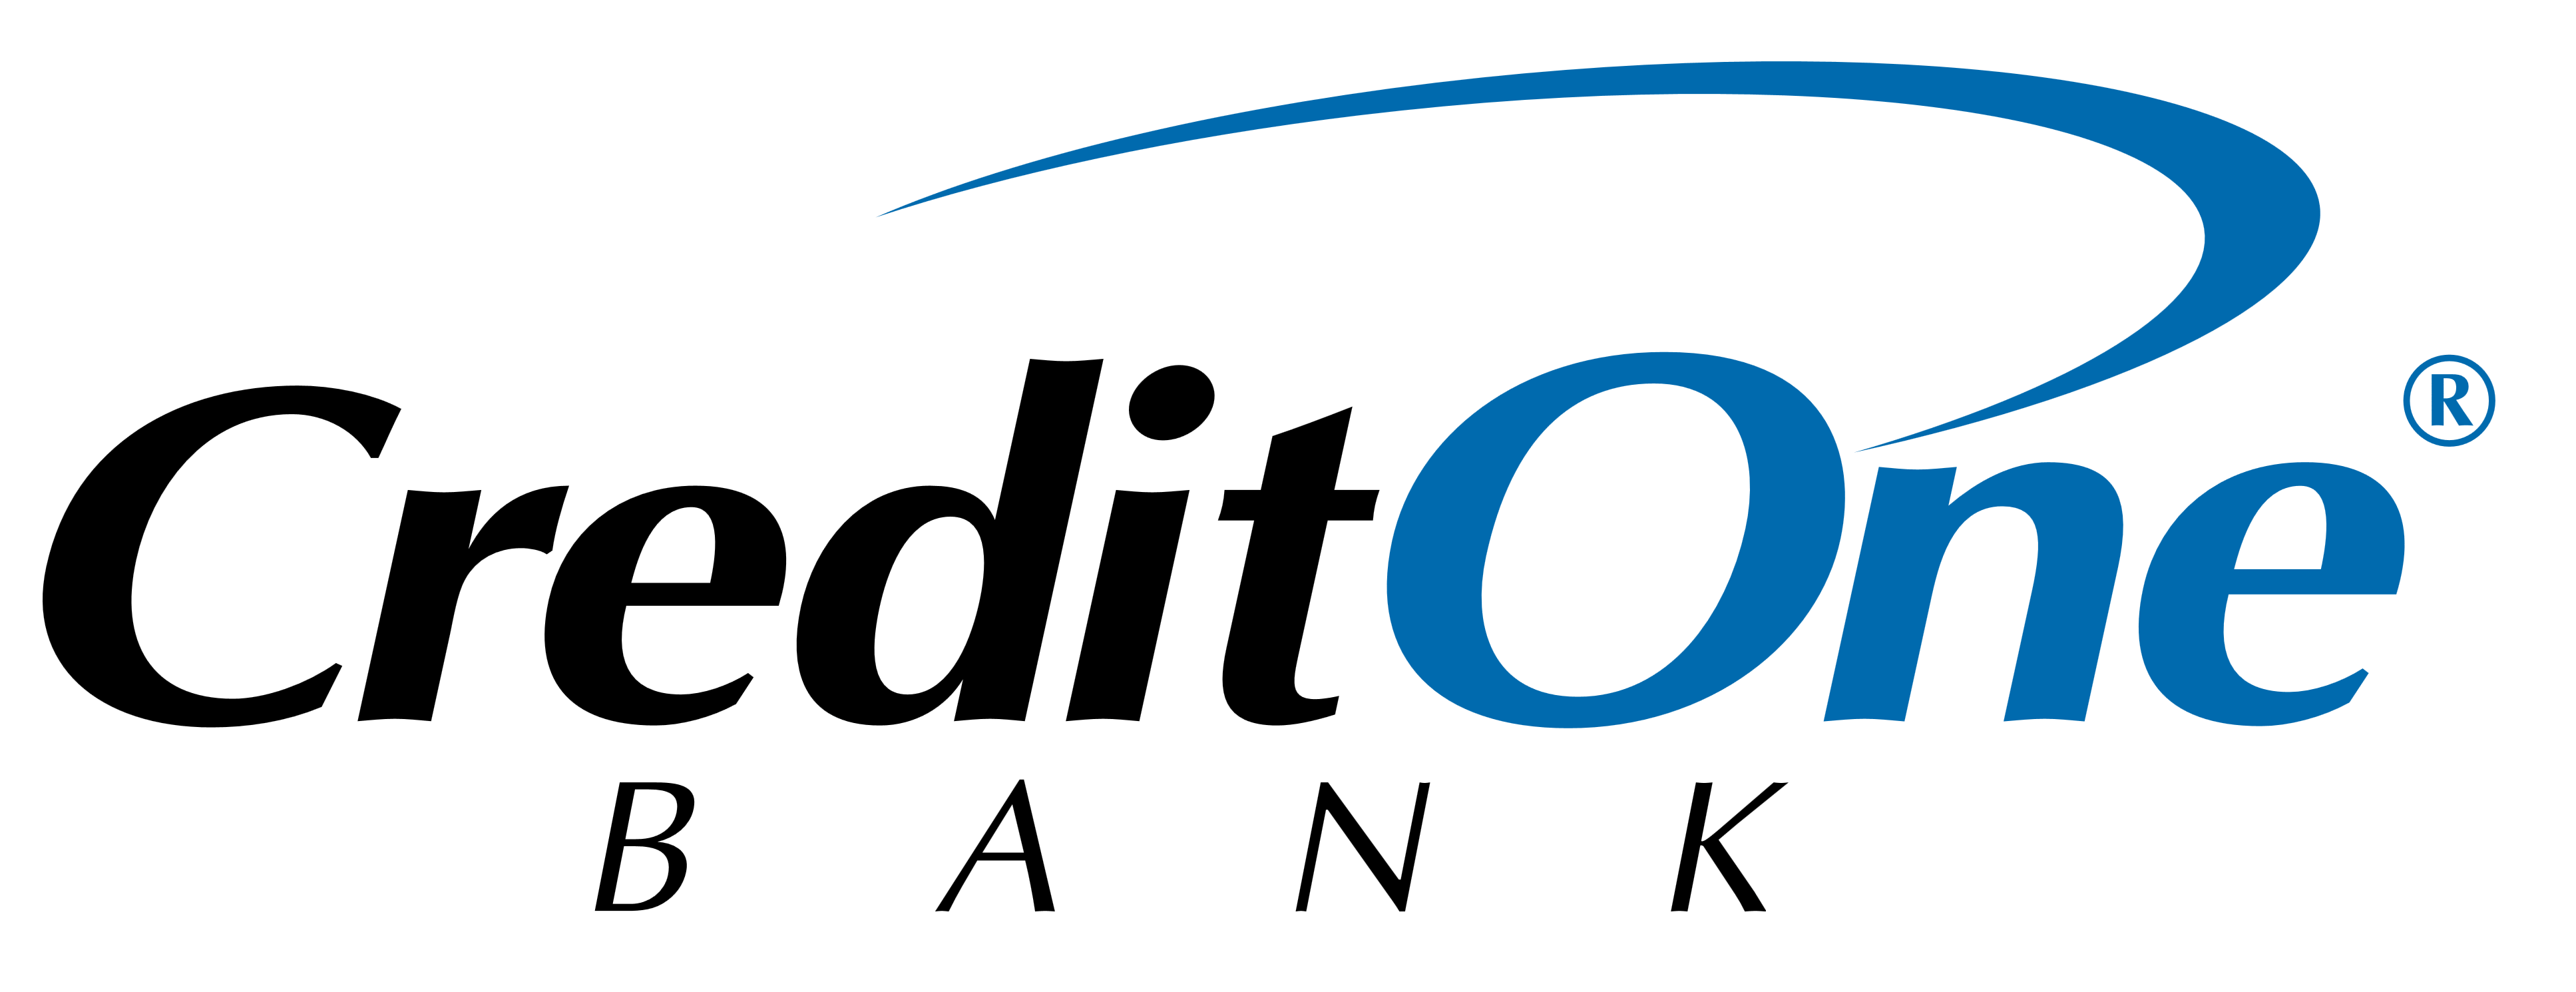 Credit One Bank logo, logotype